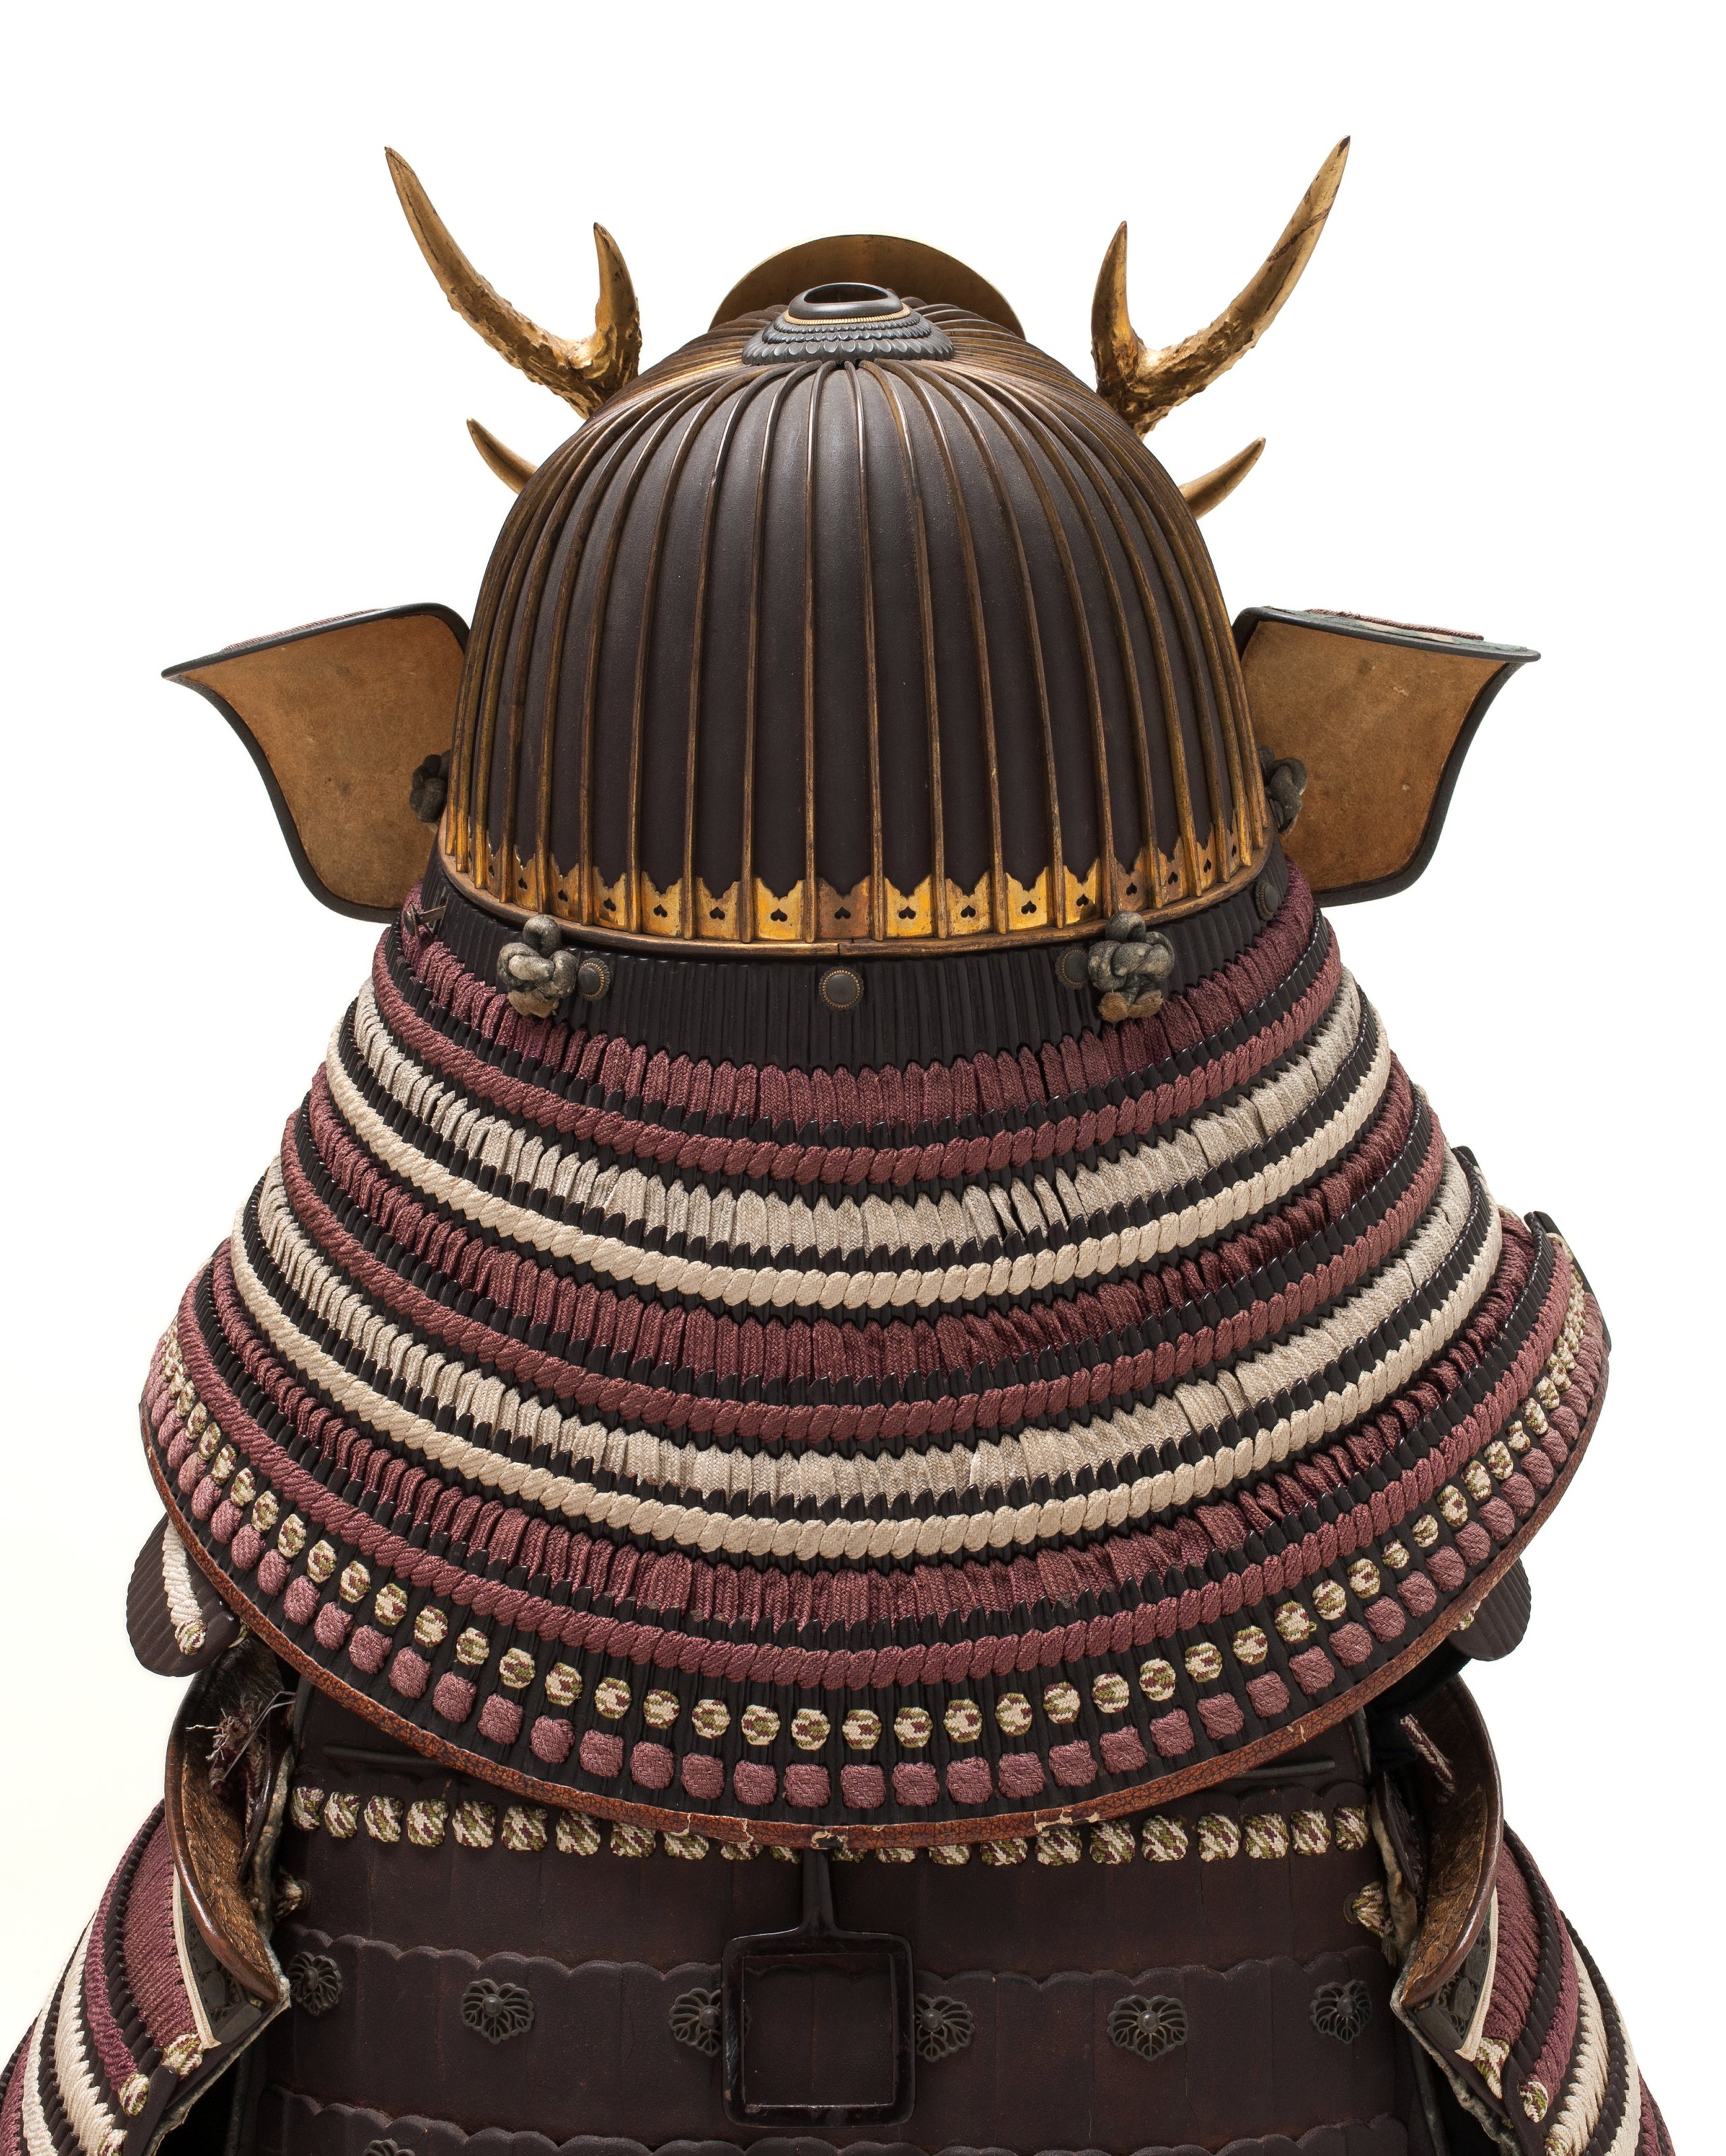 Samurai armour and horse tack